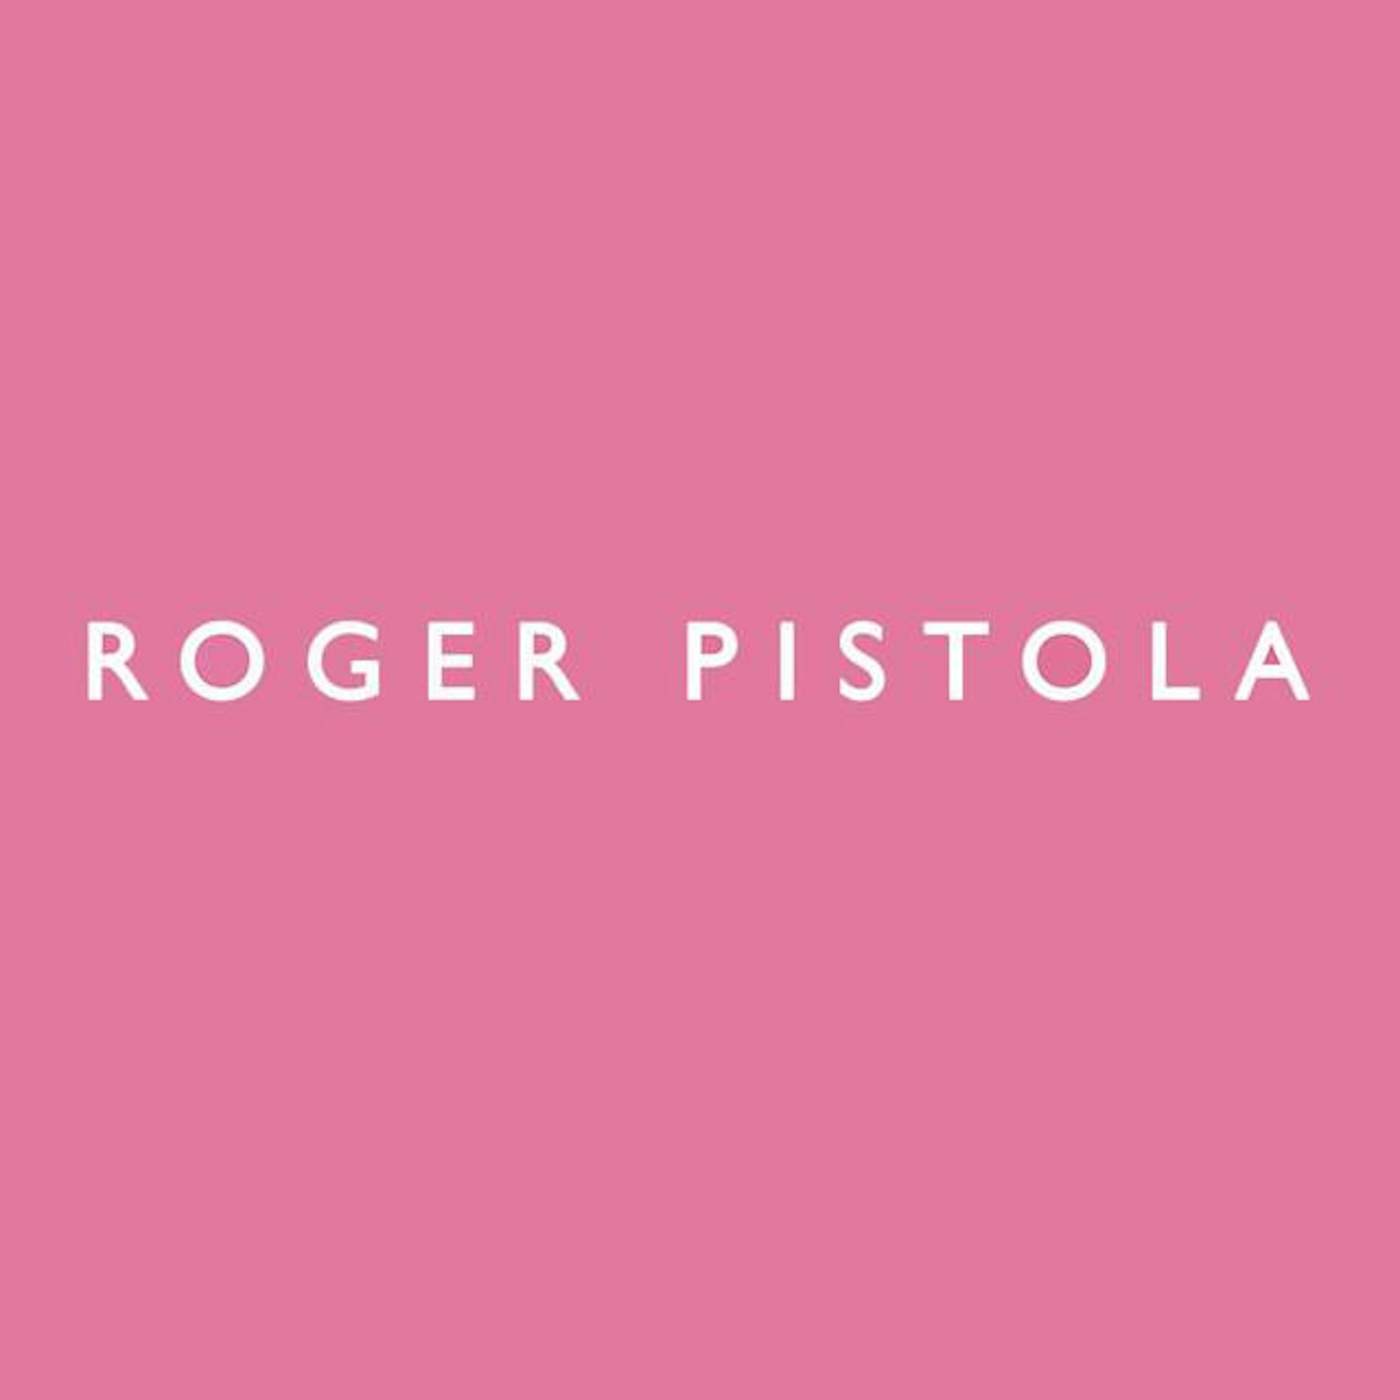 Roger Pistola